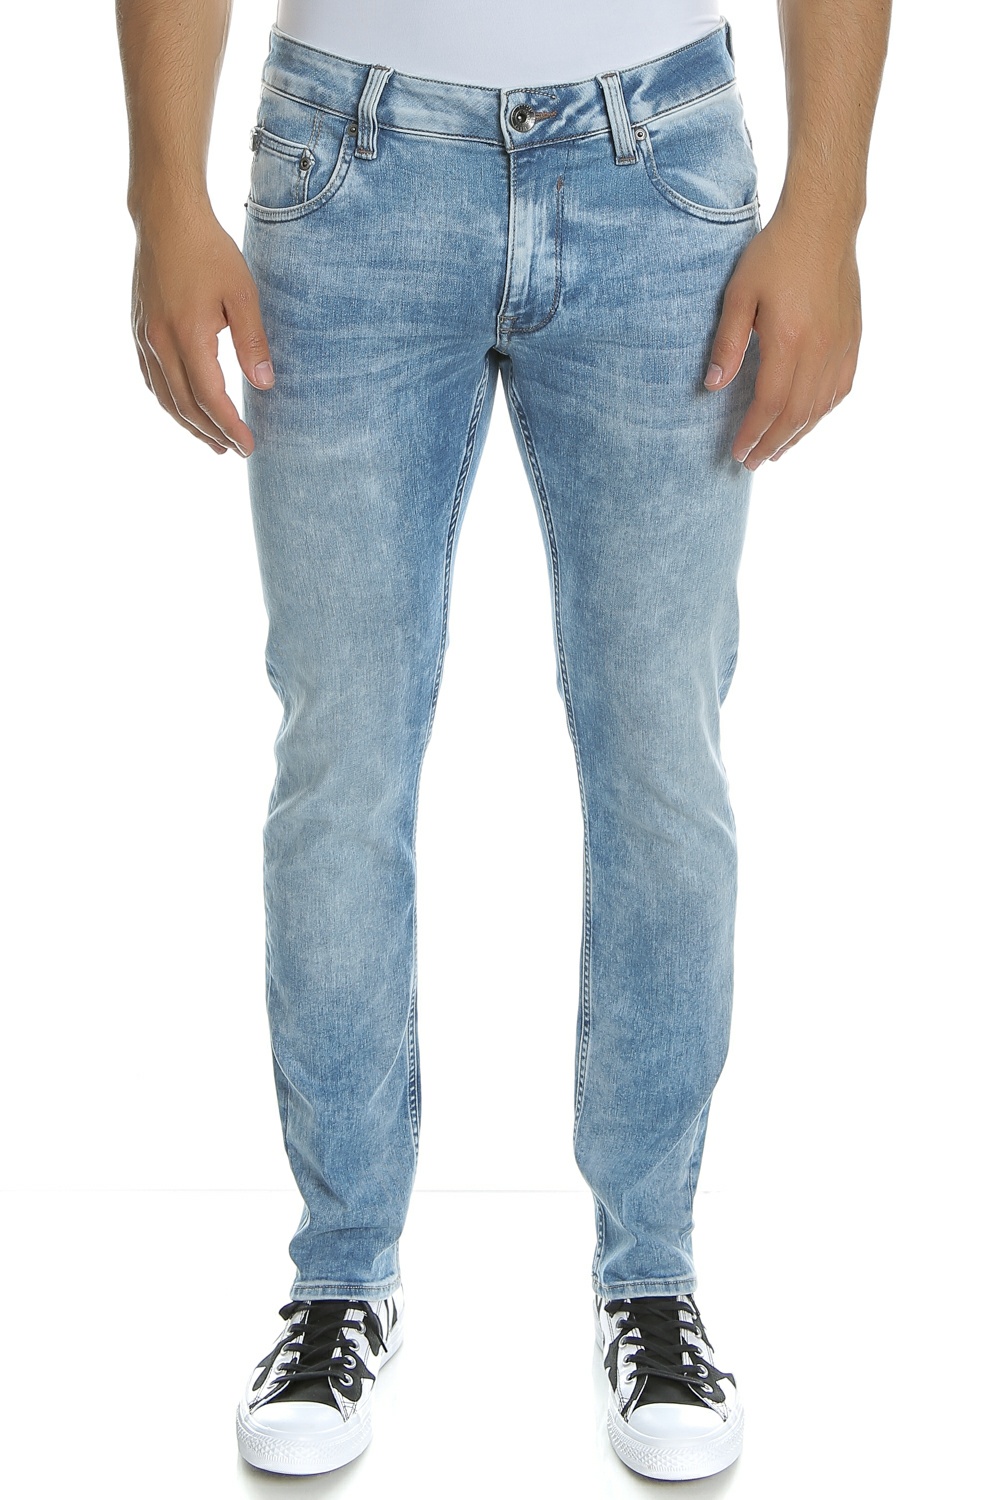 Ανδρικά/Ρούχα/Τζίν/Skinny GARCIA JEANS - Ανδρικό τζιν παντελόνι Garcia Jeans μπλε